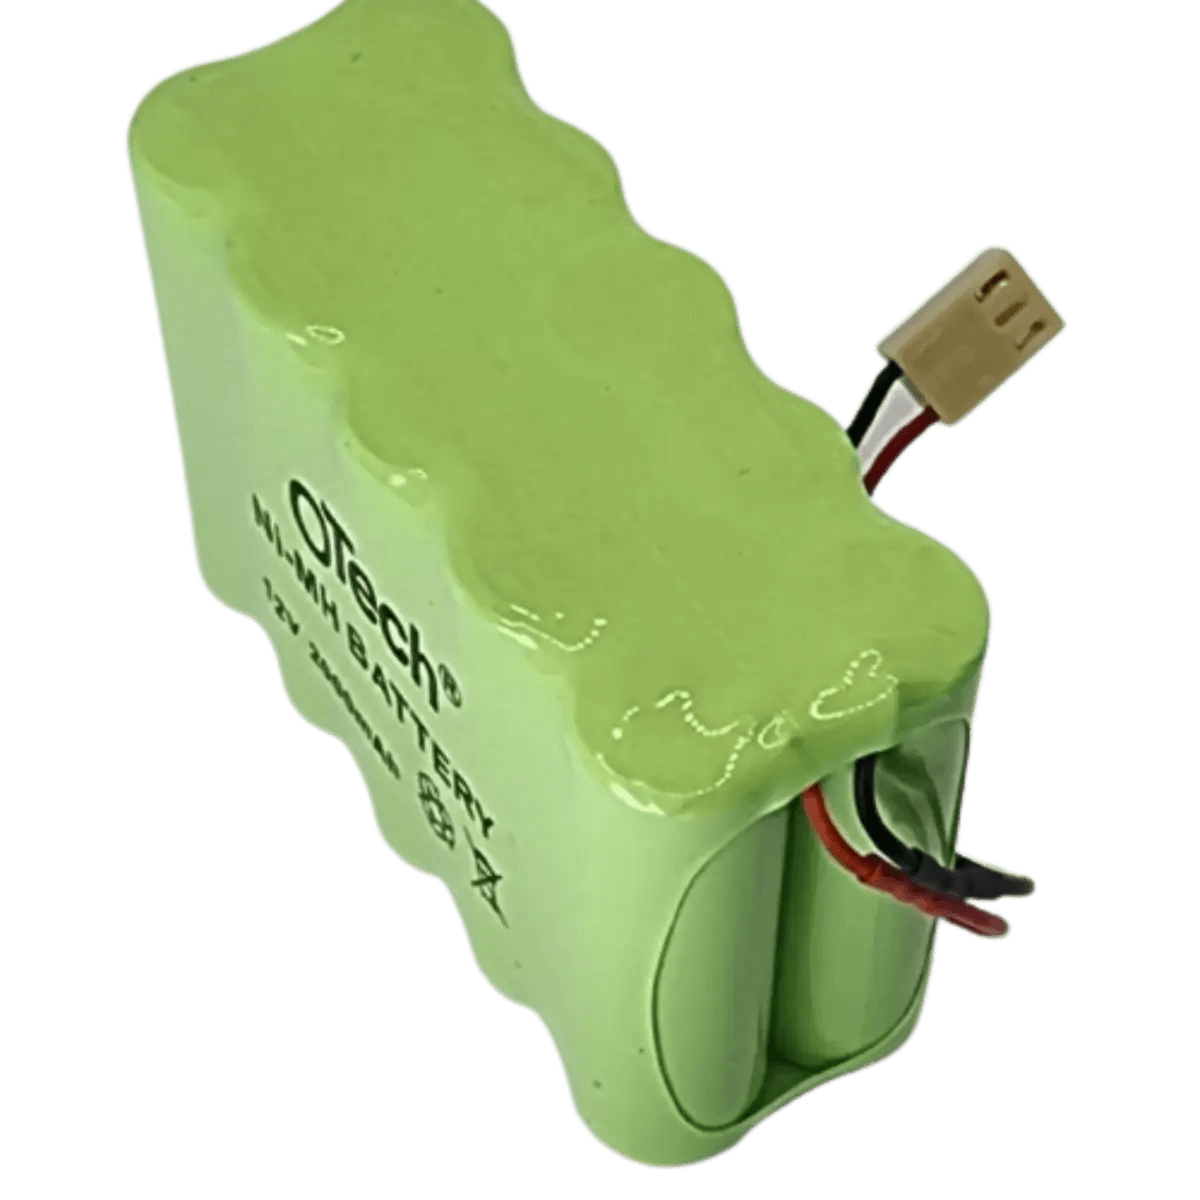 Batterie 12v 2000mAh Nimh avec Sortie Connecteur